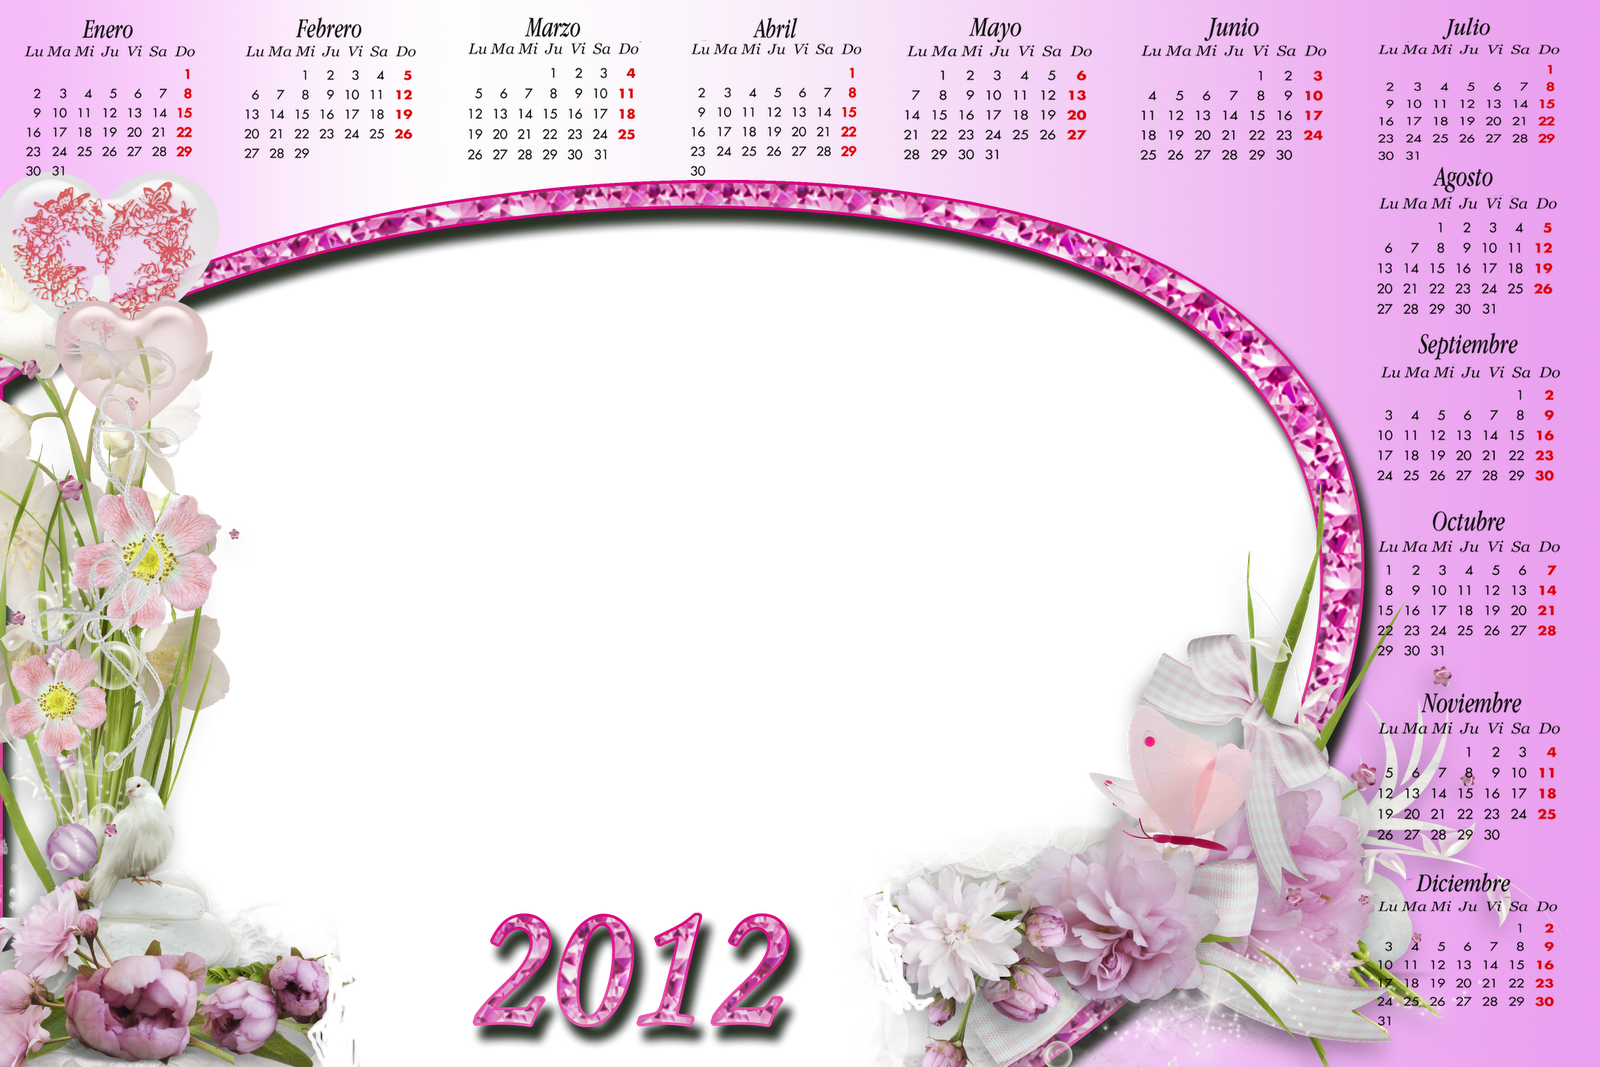 http://4.bp.blogspot.com/-jKGglDpt_UQ/TmZbcym0JHI/AAAAAAAAC1c/-6rz72hNyN0/s1600/calendario+kitt.png